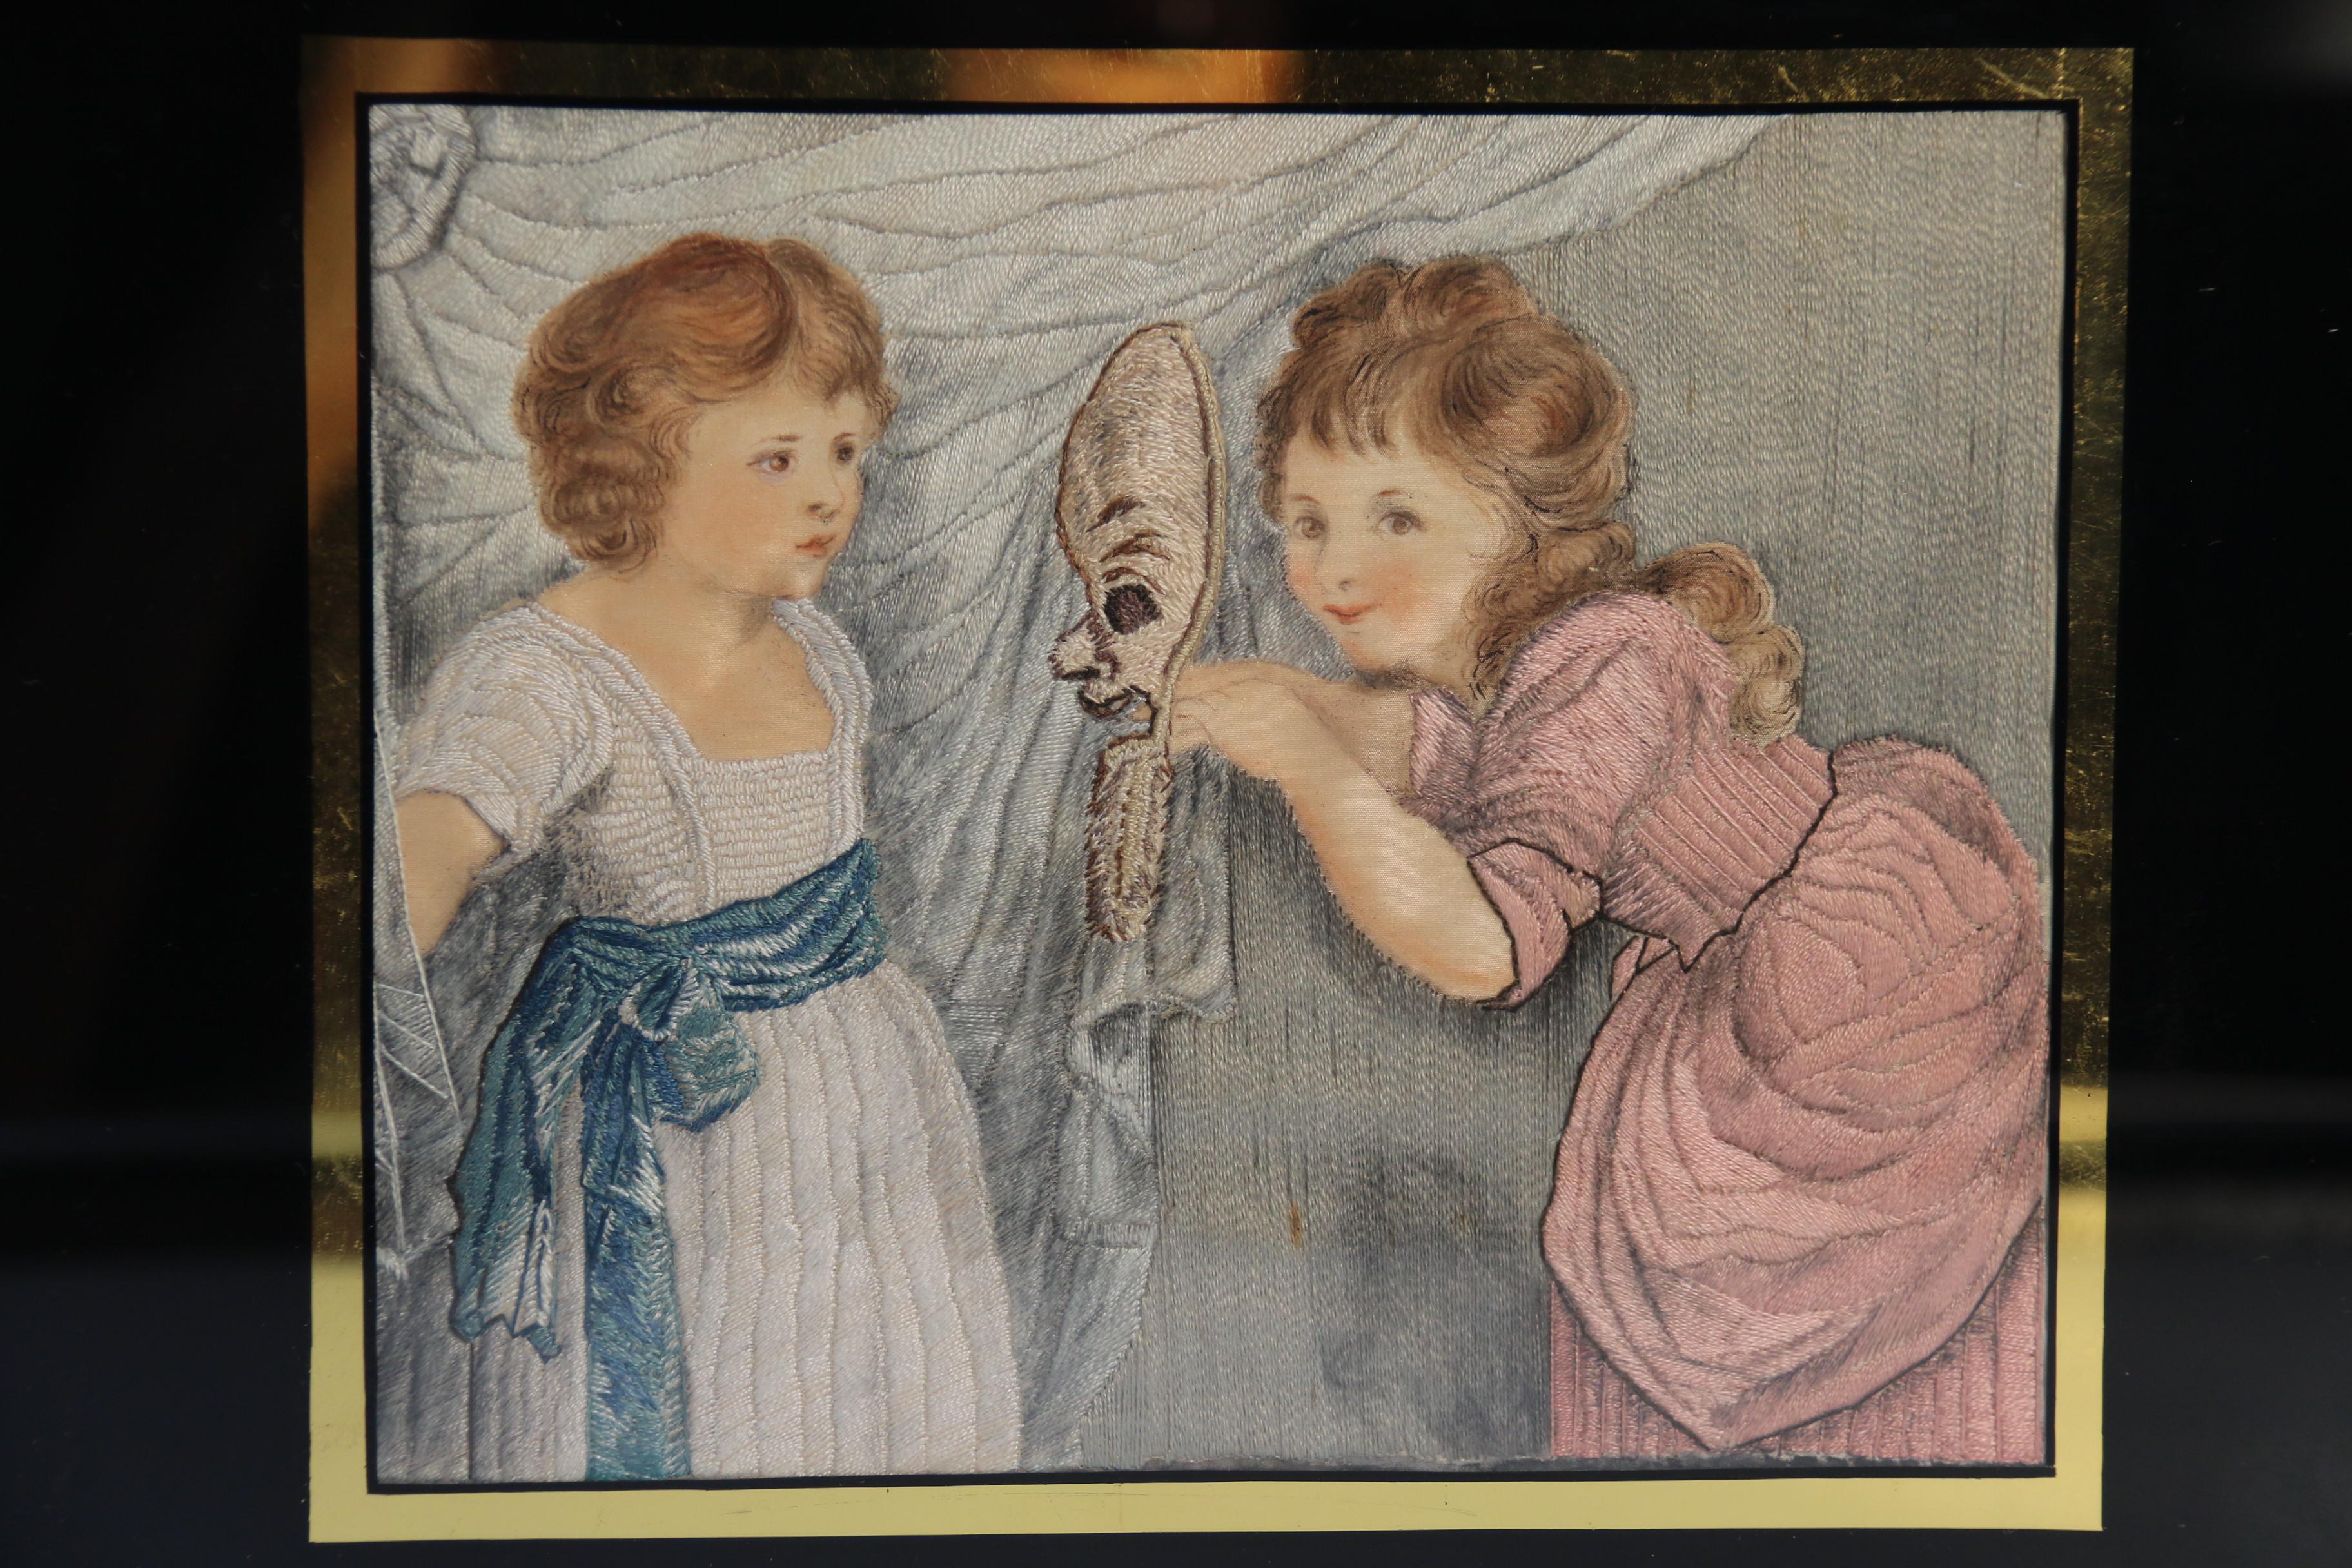 Eine außergewöhnliche Qualität frühen 19. Jahrhundert handgemalten Seide Handarbeit Bild von zwei Mädchen spielen mit einer Maske.

Dieses sehr hochwertige, handgemalte Bild aus dem frühen 19. Jahrhundert mit Seidenmalerei ist ein sehr schönes